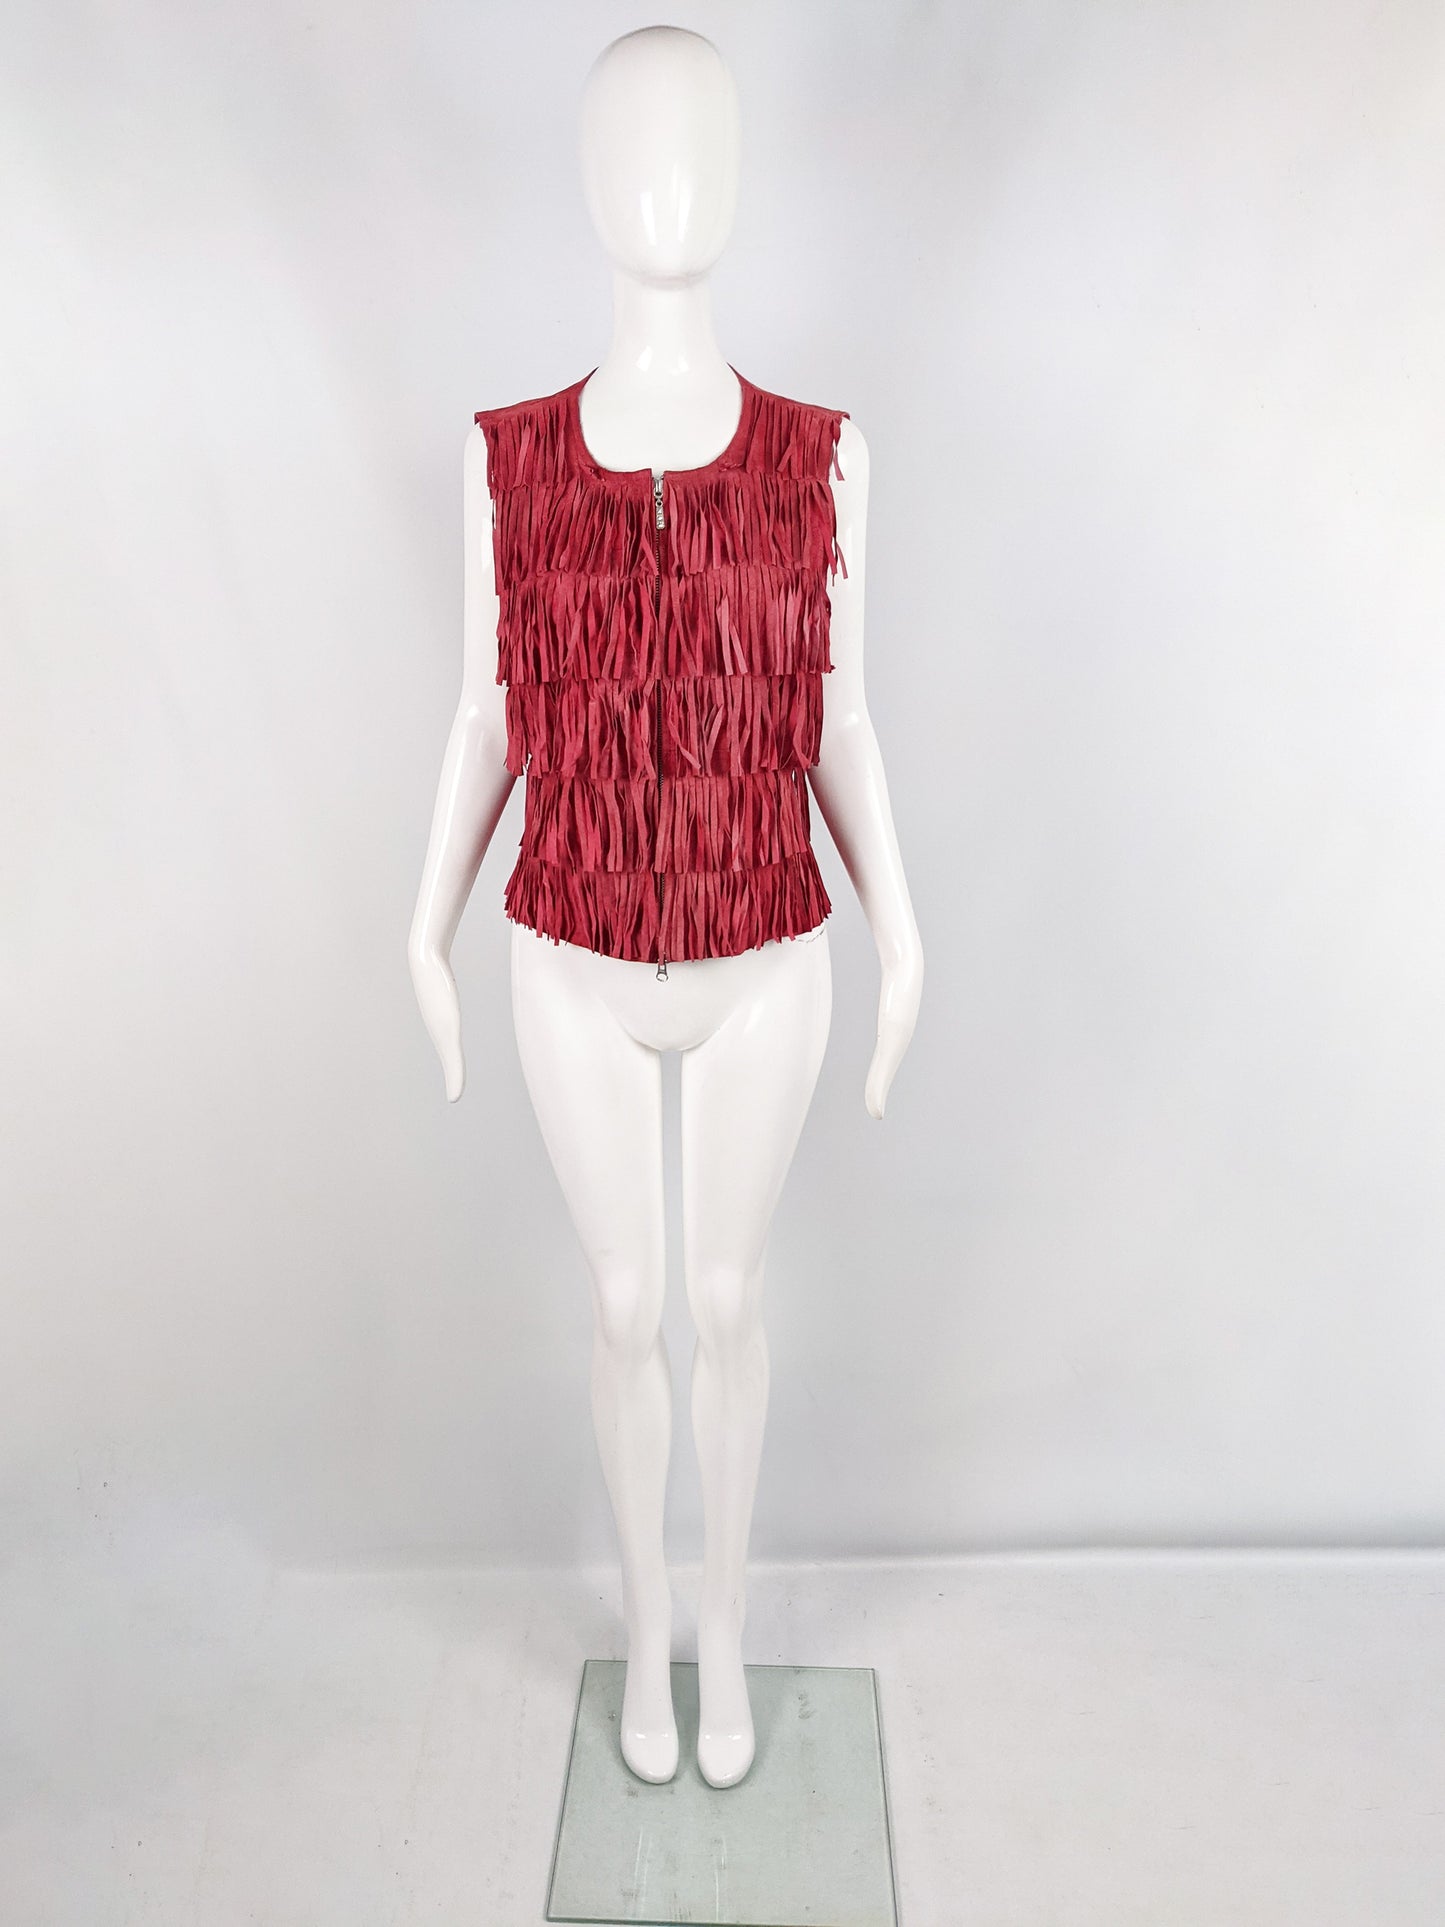 Berek Vintage Red Suede Fringed Sleeveless Jacket, 1990s